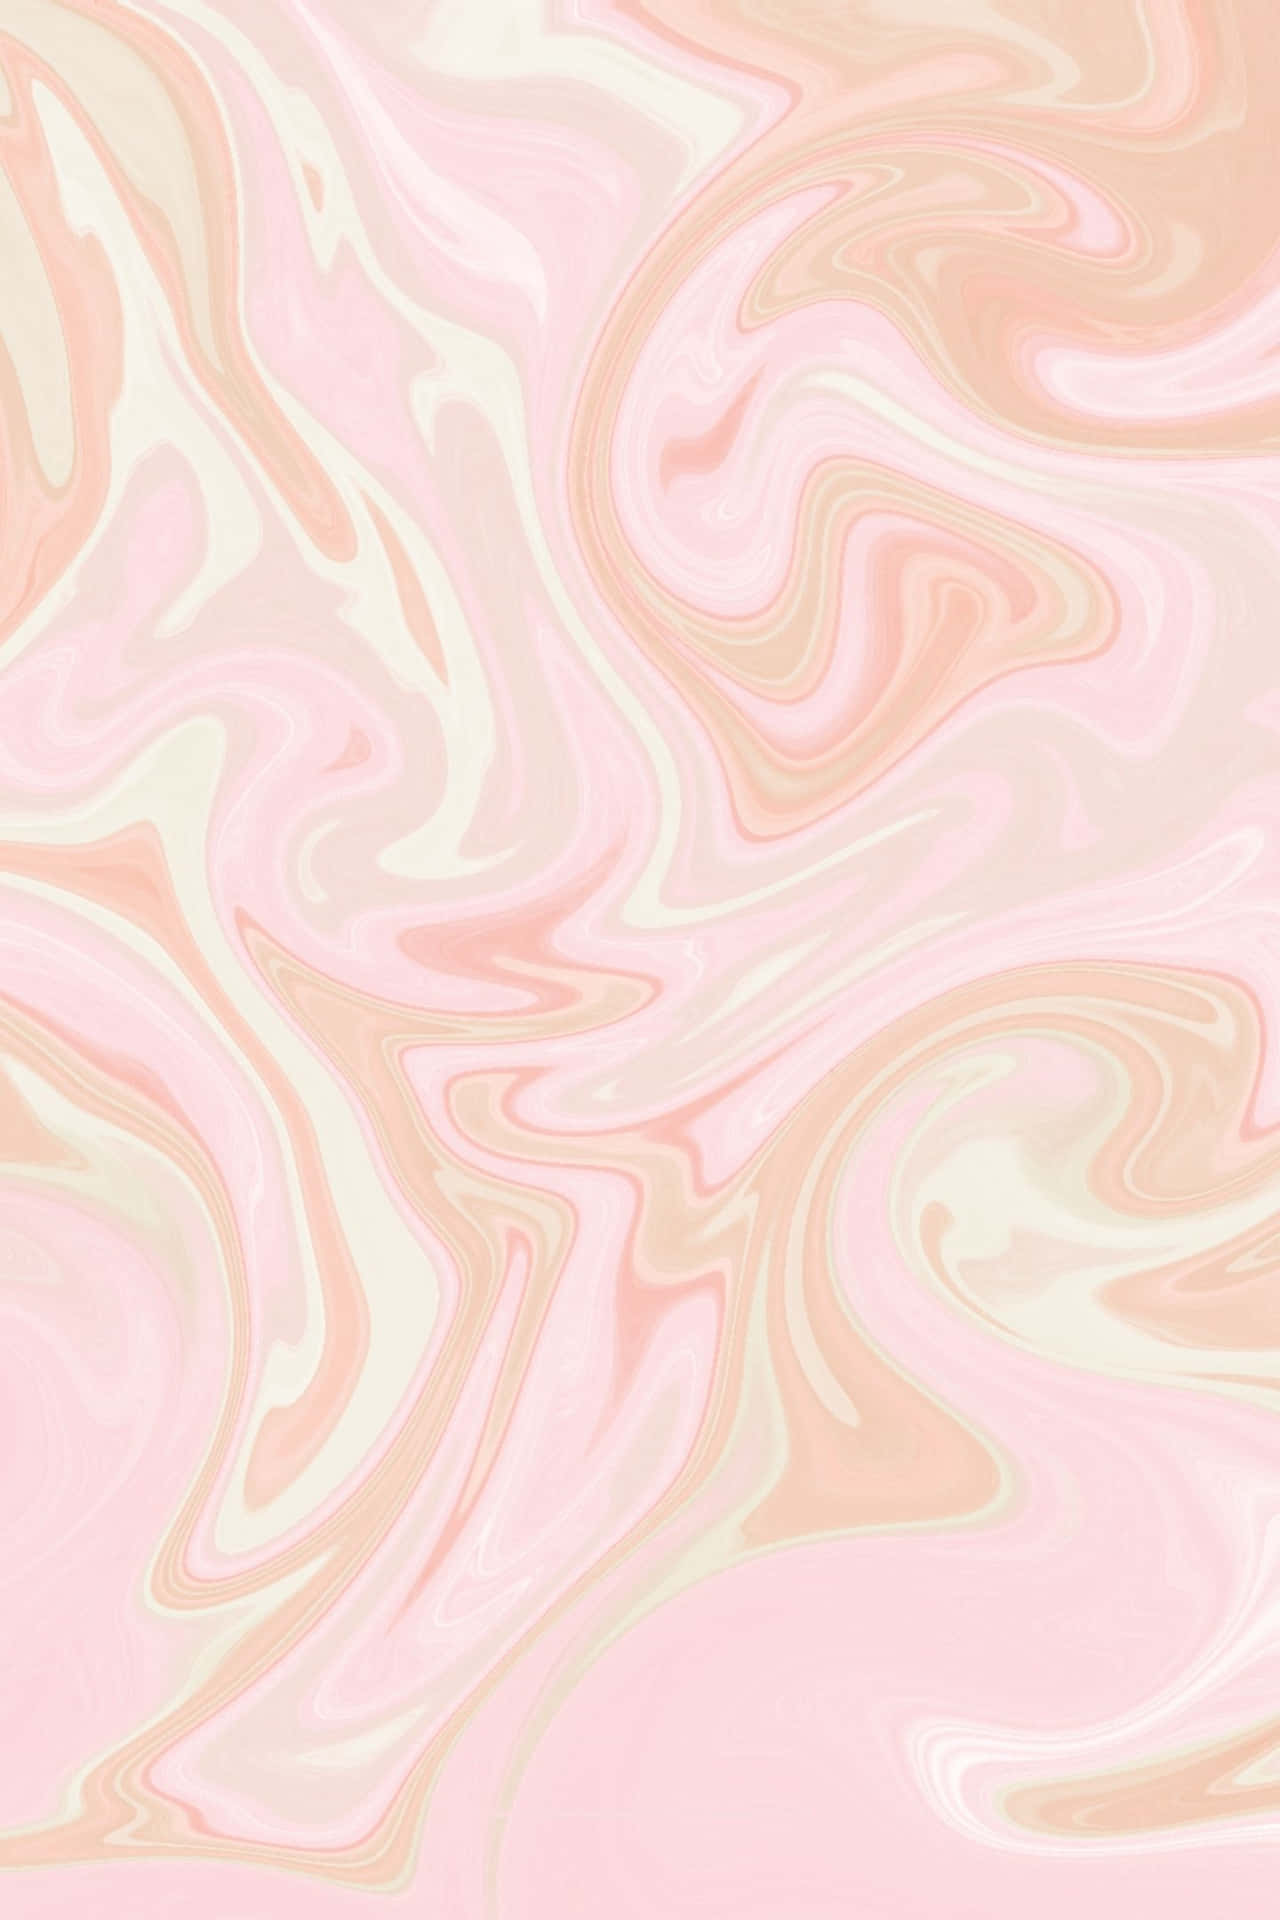 Pinkespastell-hd-marmorhintergrund